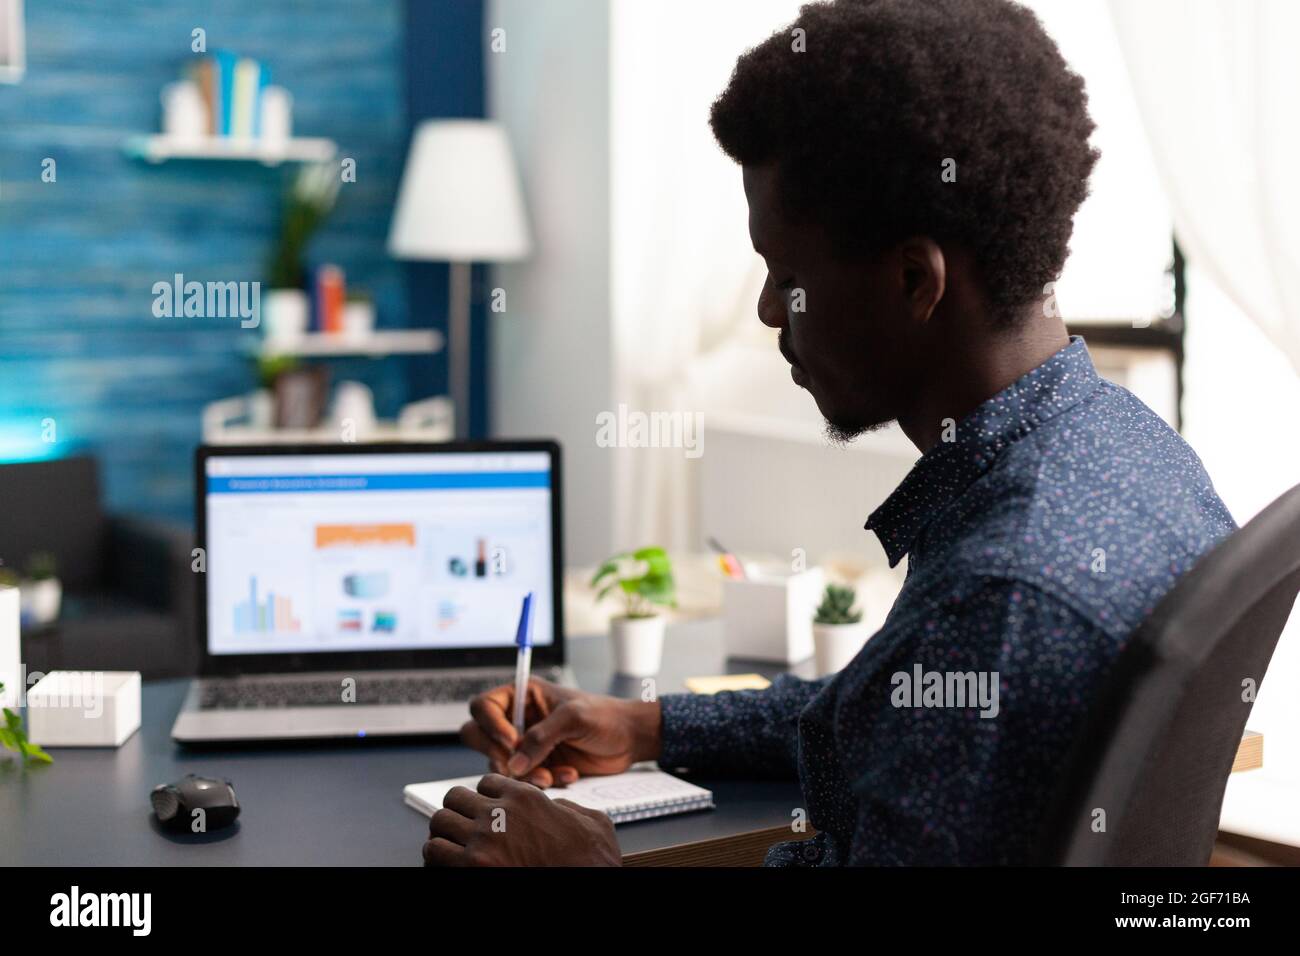 Homme noir travaillant à domicile à l'aide de l'application de données d'économie financière sur ordinateur portable. Afro-américain Guy utilisateur d'ordinateur en utilisant les affaires lieu de travail Internet en ligne site de communication de l'emploi style de vie Banque D'Images